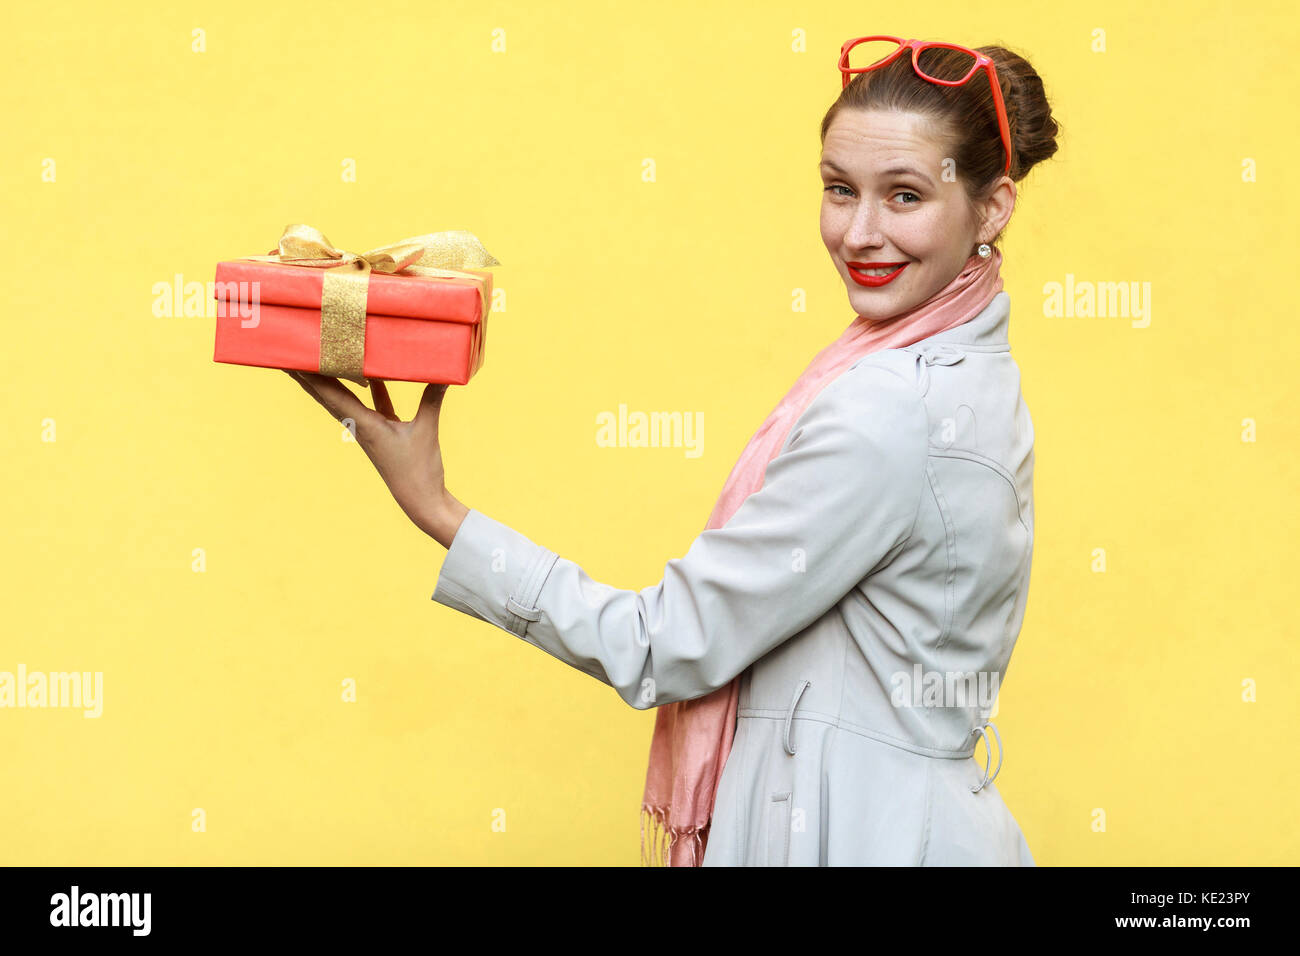 Regalo con amor. interesante jengibre joven mujer adulta con una caja de regalo sobre fondo amarillo. Foto de estudio Foto de stock